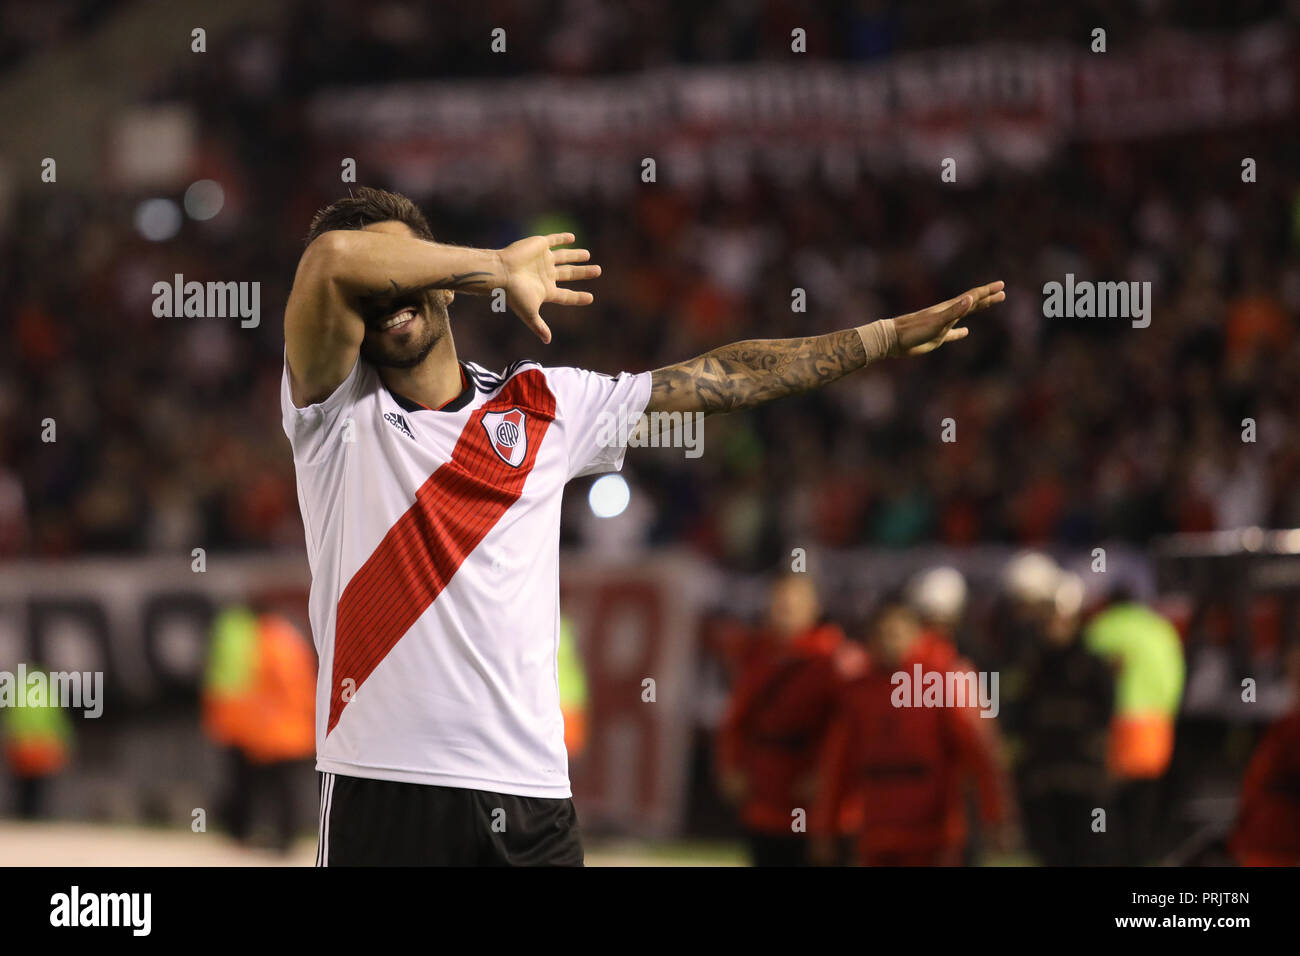 Ignacio Scocco (River) celebrating his goal against Independiente in the Estadio Monumental Vespucio Liberti in Buenos Aires, Argentina Stock Photo